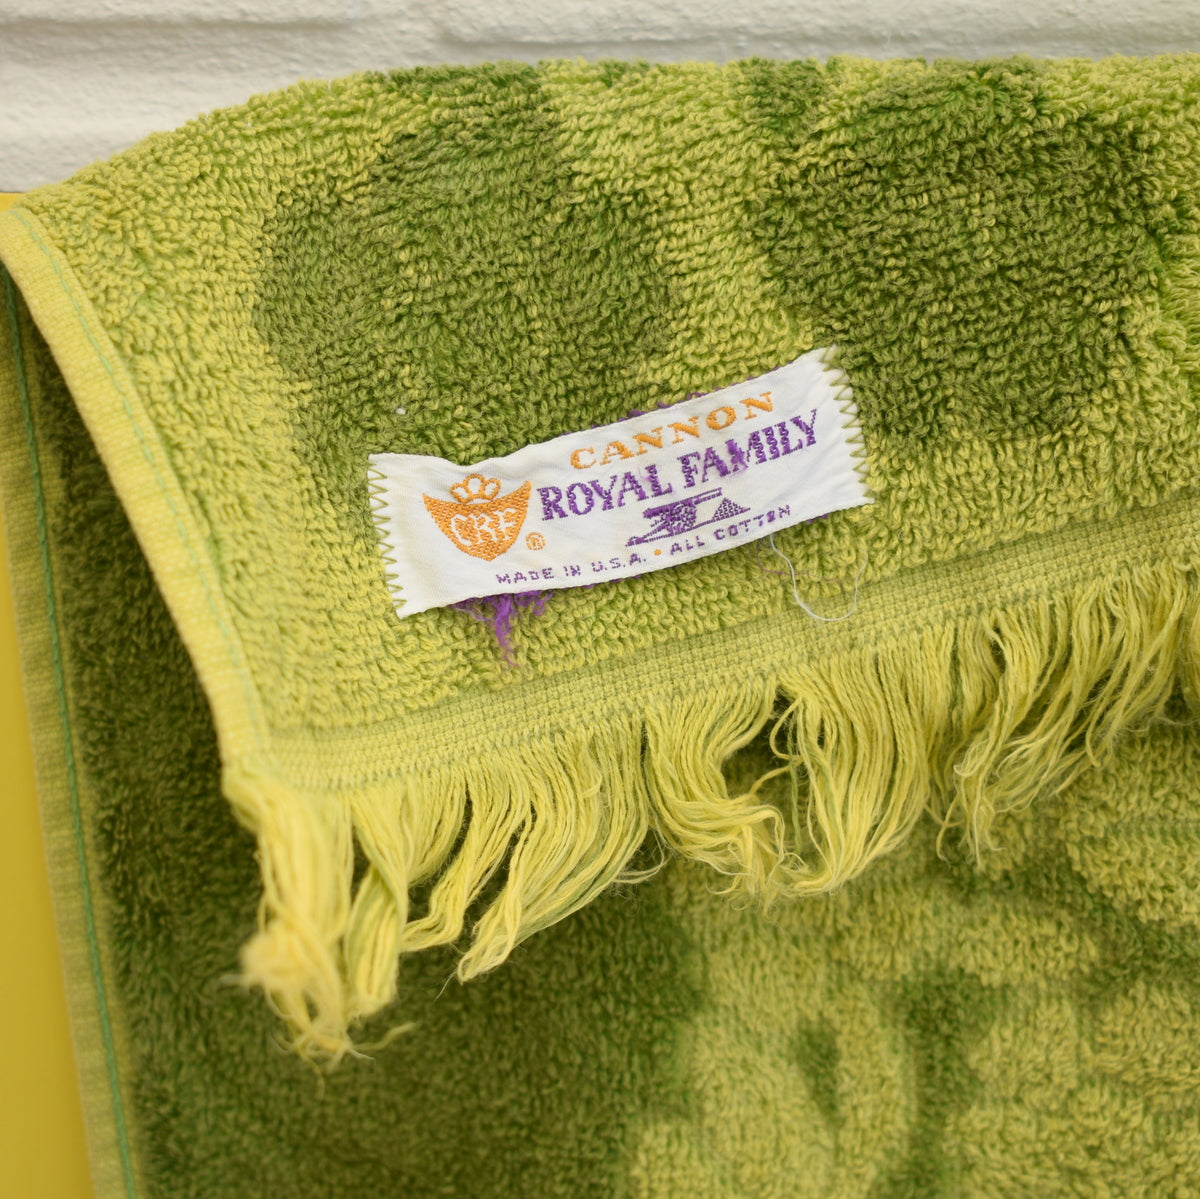 Vintage 1960s Cotton Bath Towels - Green